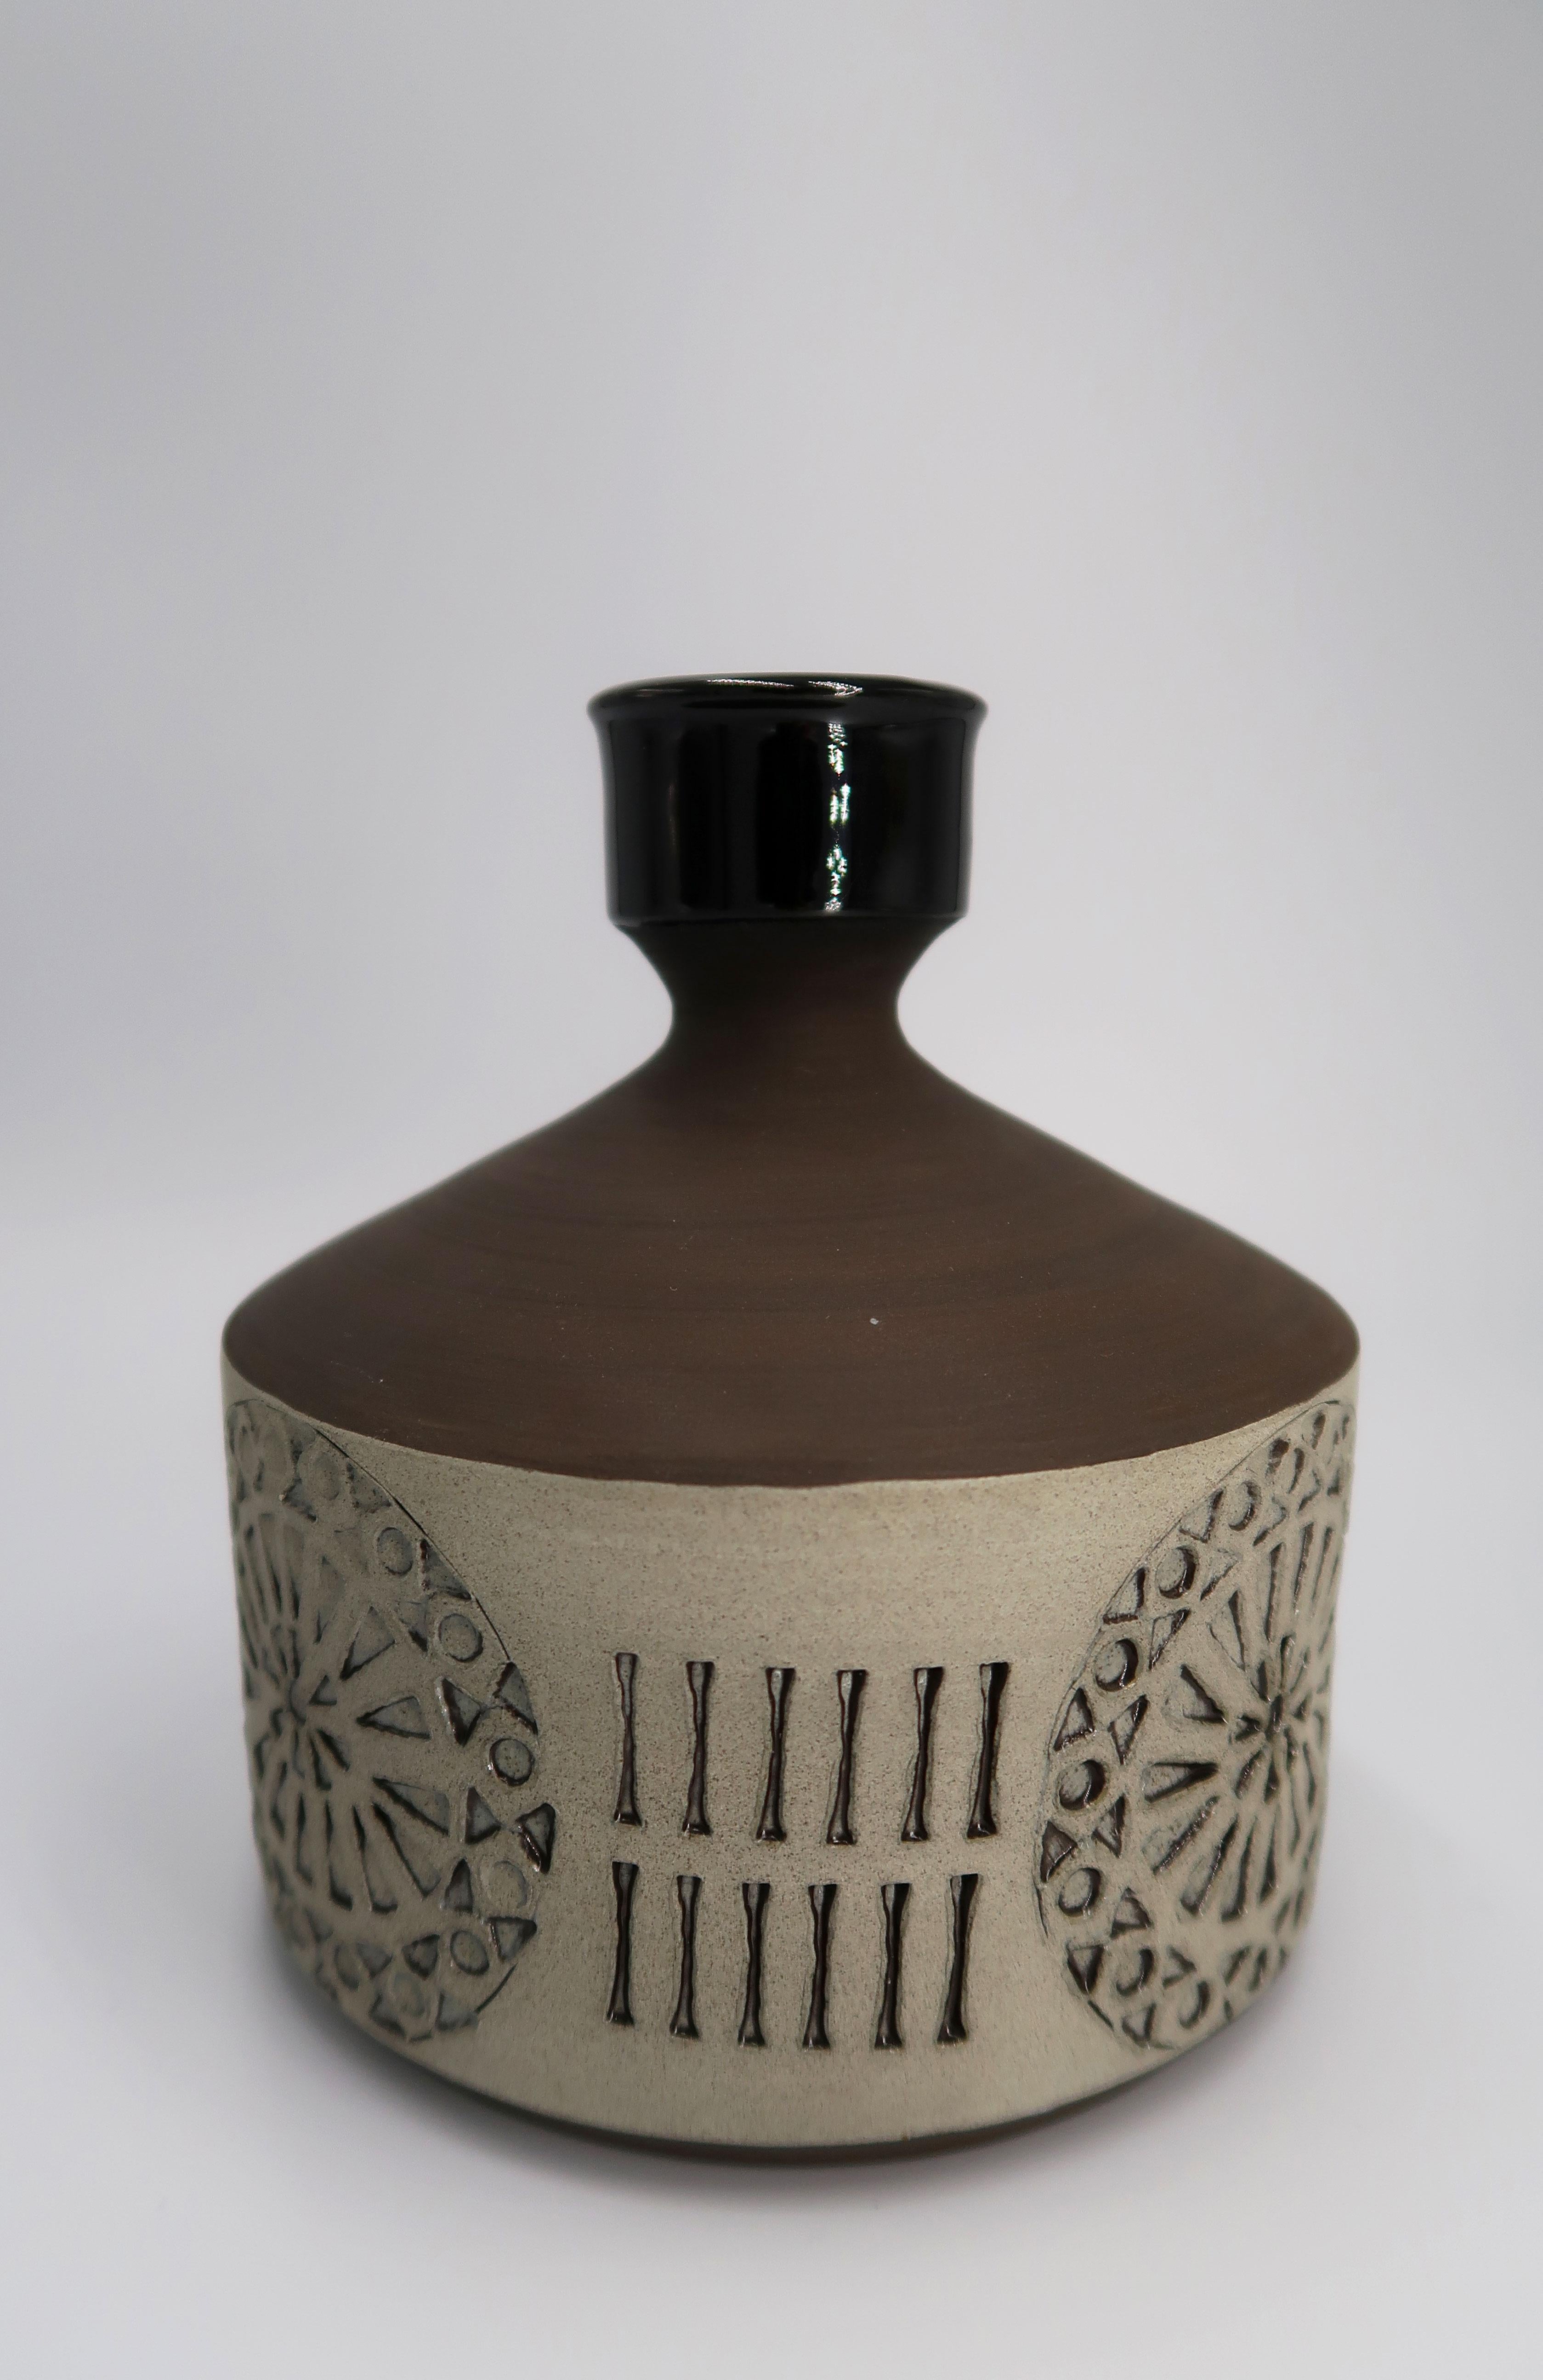 Hand-Carved Handmade Black, Sand Candlestick Vase by Swedish Alingsås, 1960s For Sale